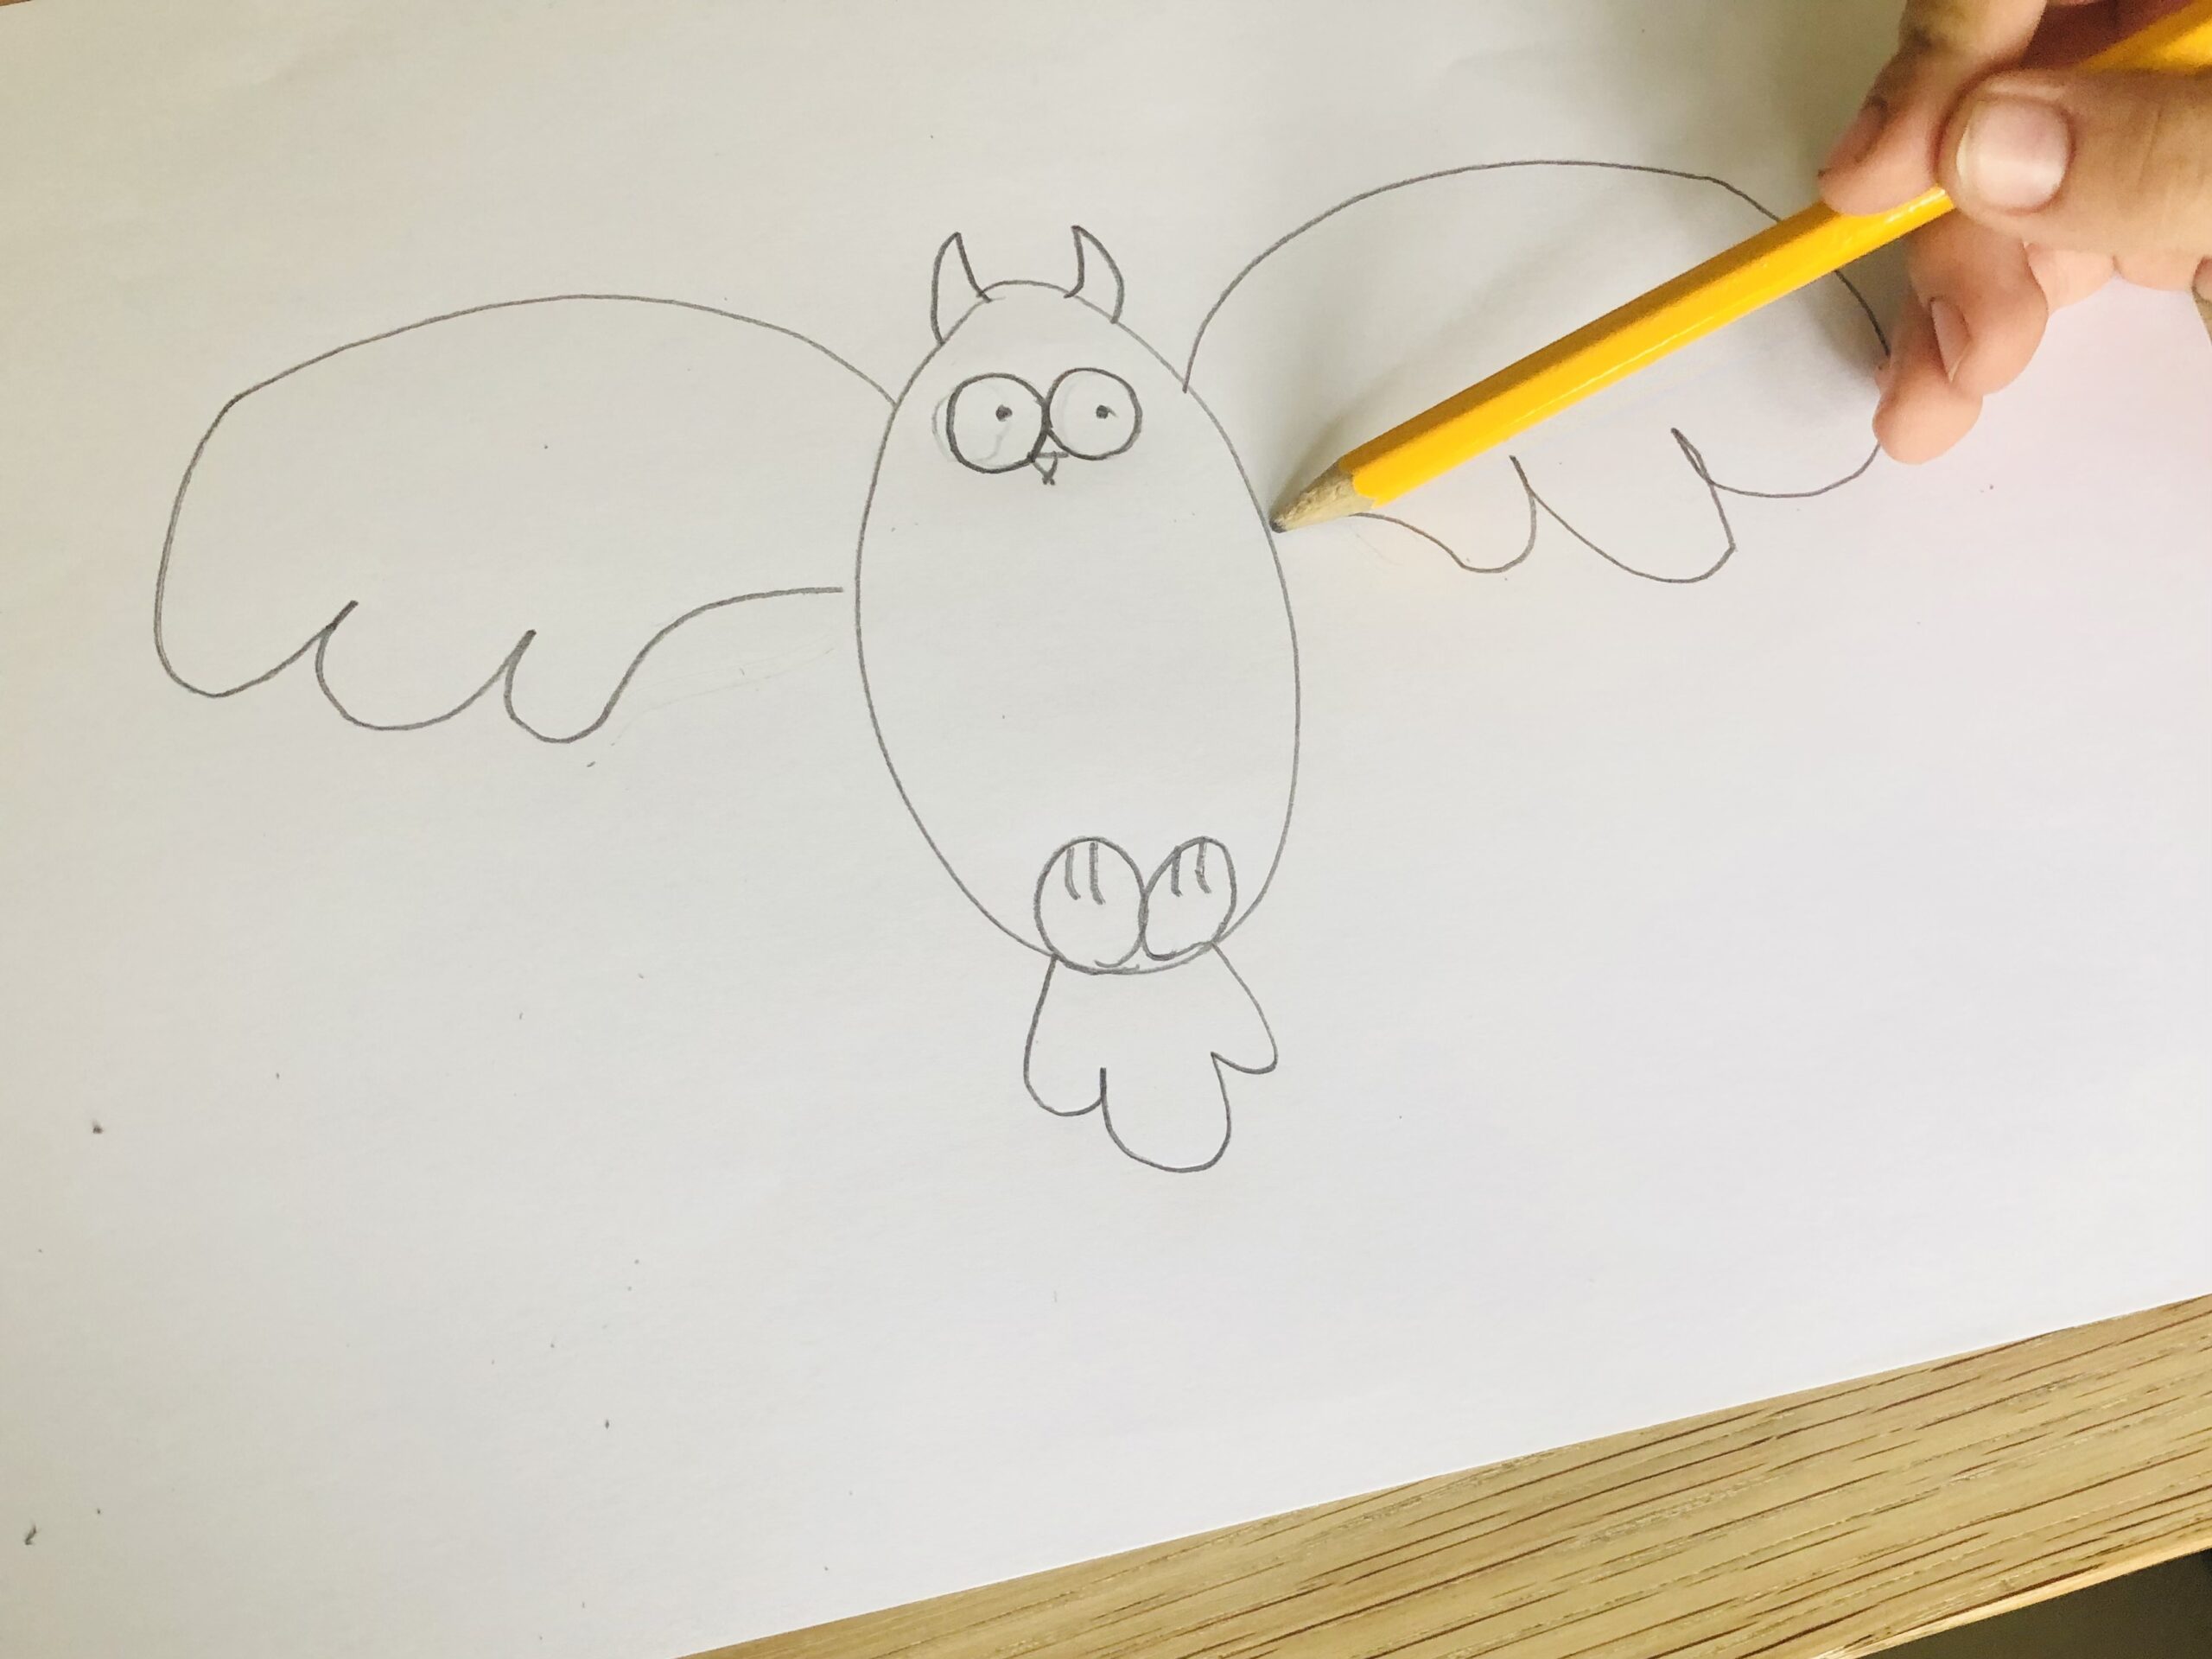 Bild zum Schritt 8 für das Bastel- und DIY-Abenteuer für Kinder: 'Jetzt malt ihr die Flügel fertig. Dafür malt ihr jeweils...'